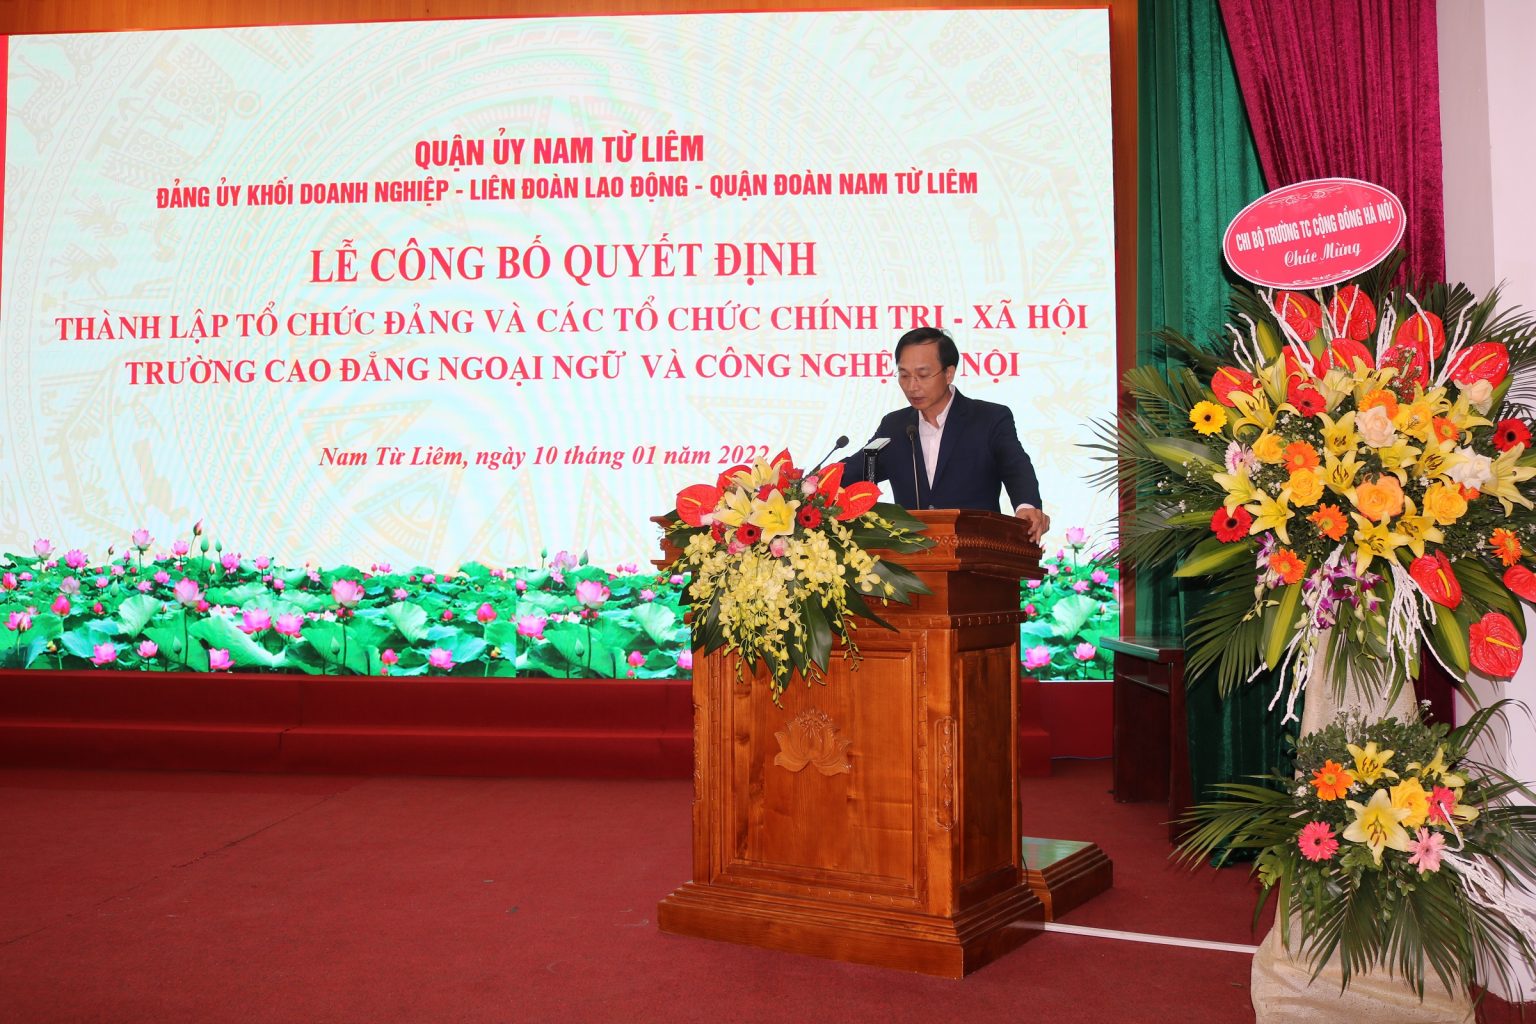 Đồng chí Nguyễn Trung Nghĩa – Trưởng Ban Tổ chức Quận ủy phát biểu chỉ đạo